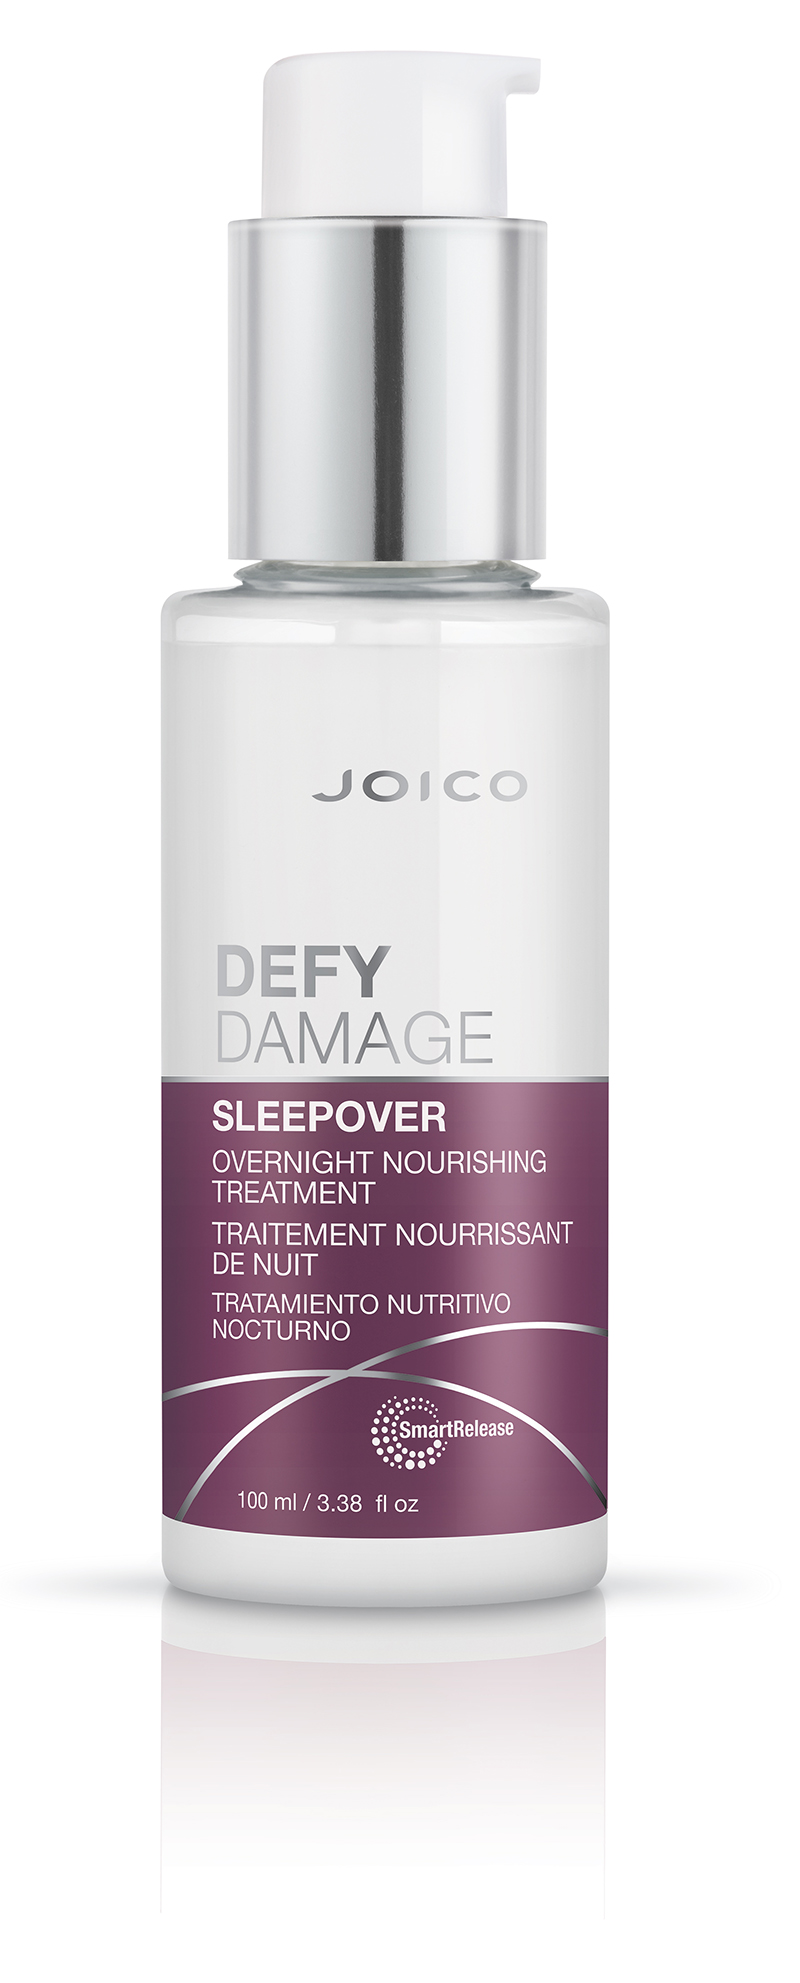 Joico Defy Damage™ Sleepover Overnight Nourishing Treatment 